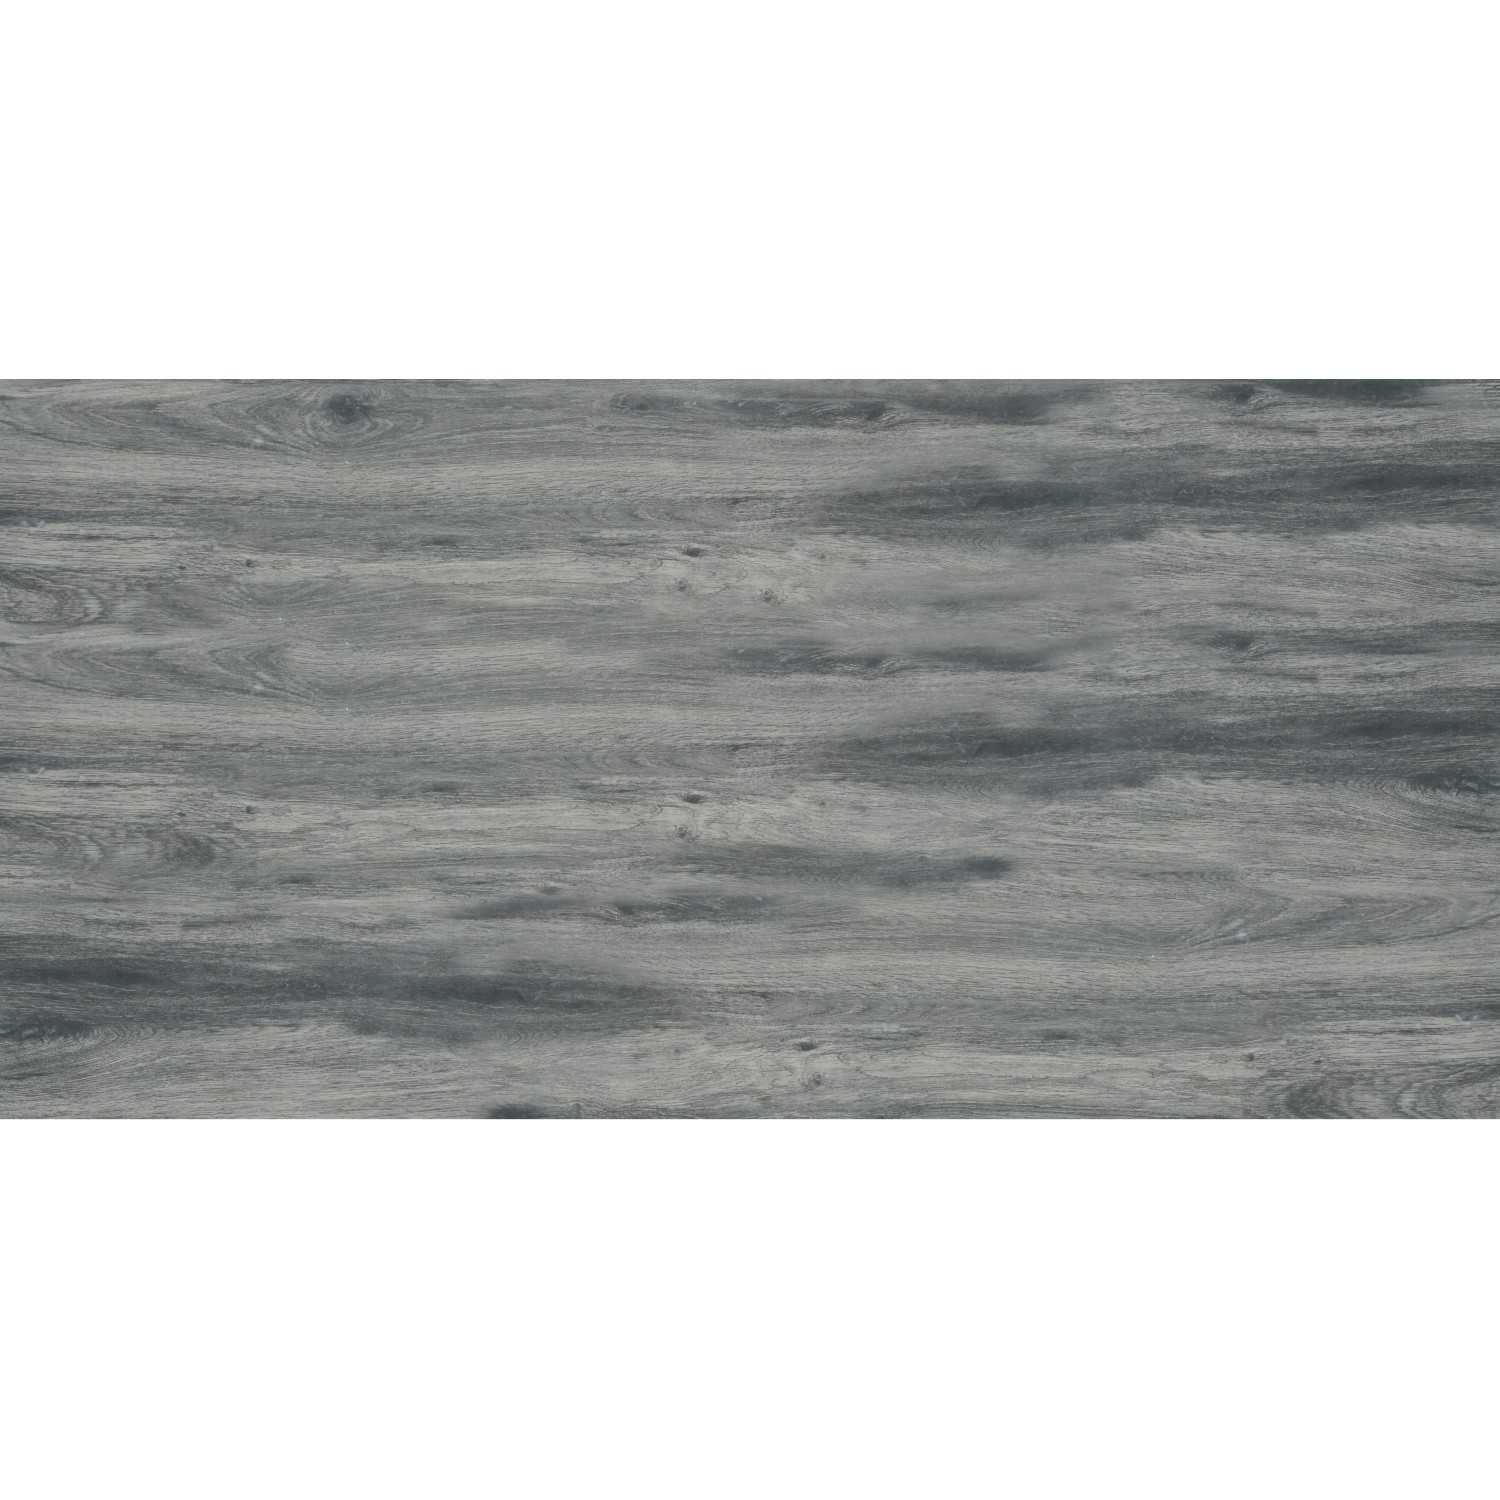 Terrassenplatte Feinsteinzeug Skagen Walnuss-Grau glasiert matt 60 x 120 x 2 cm von -